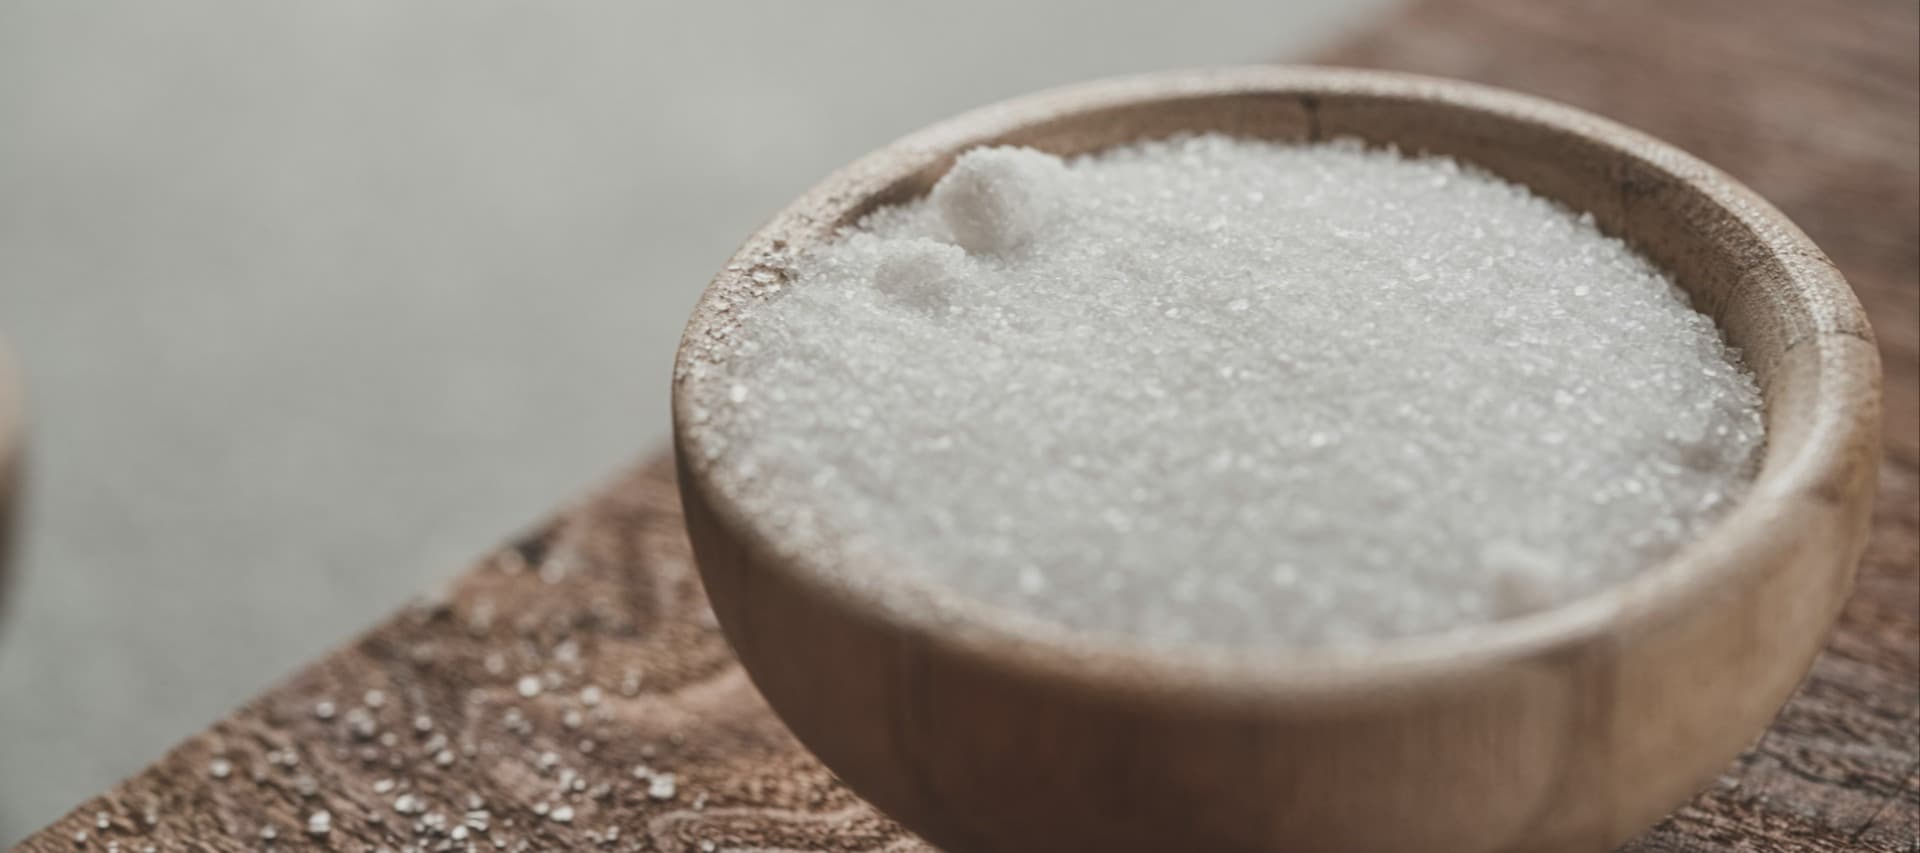 Фото новости: "«Интерфакс»: Минсельхоз предложил запретить экспорт сахара до августа"